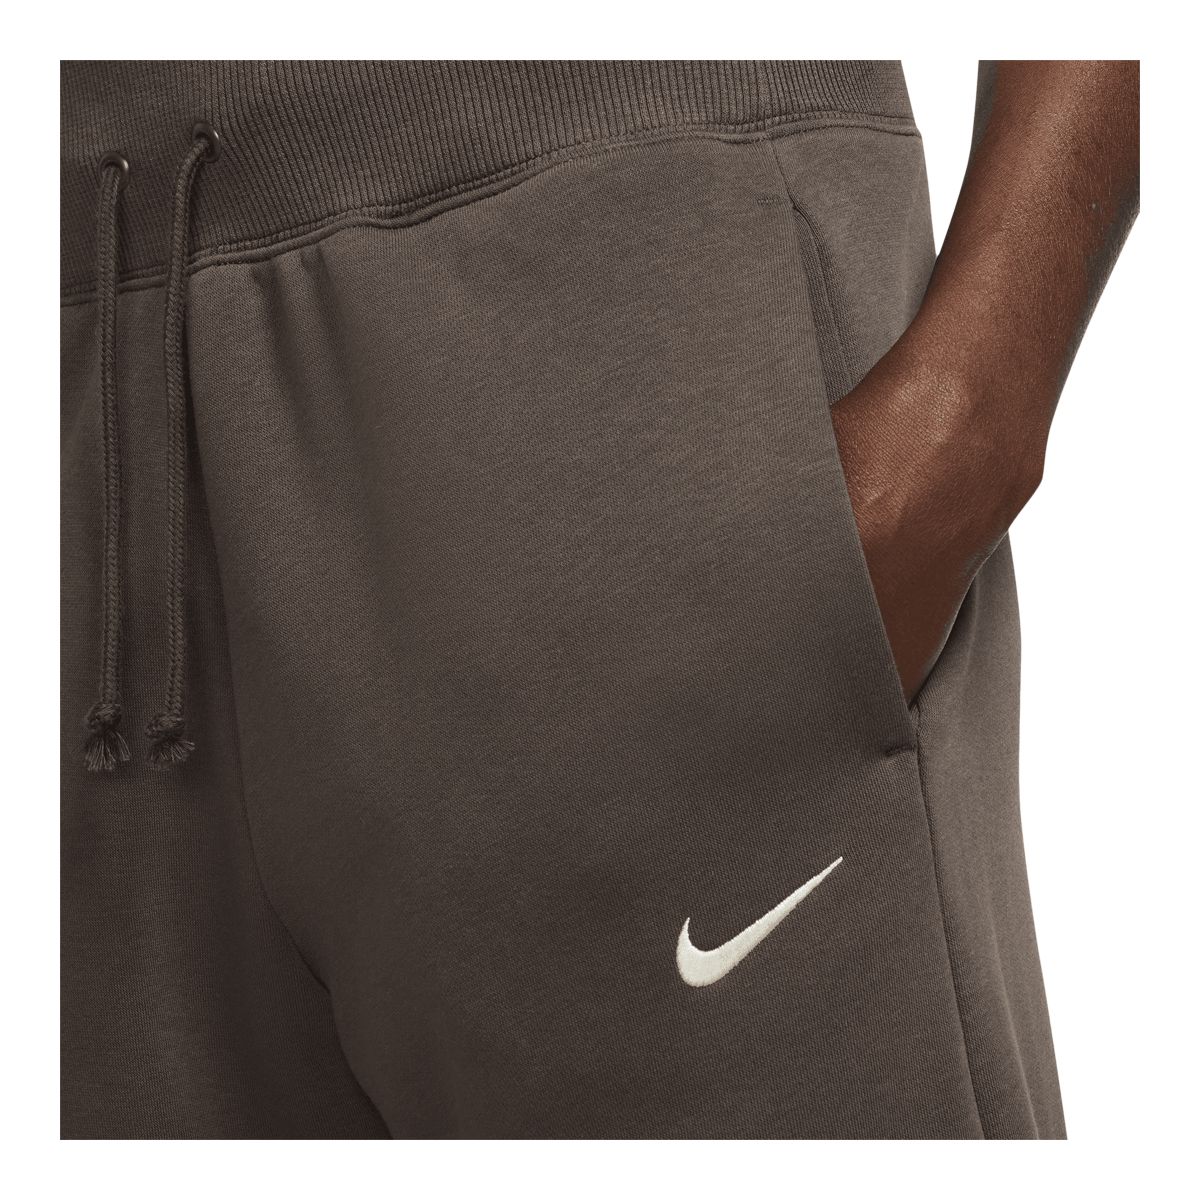 Nike Women's Sportswear Phoenix Fleece Pants, Casual, High Rise, Wide Leg